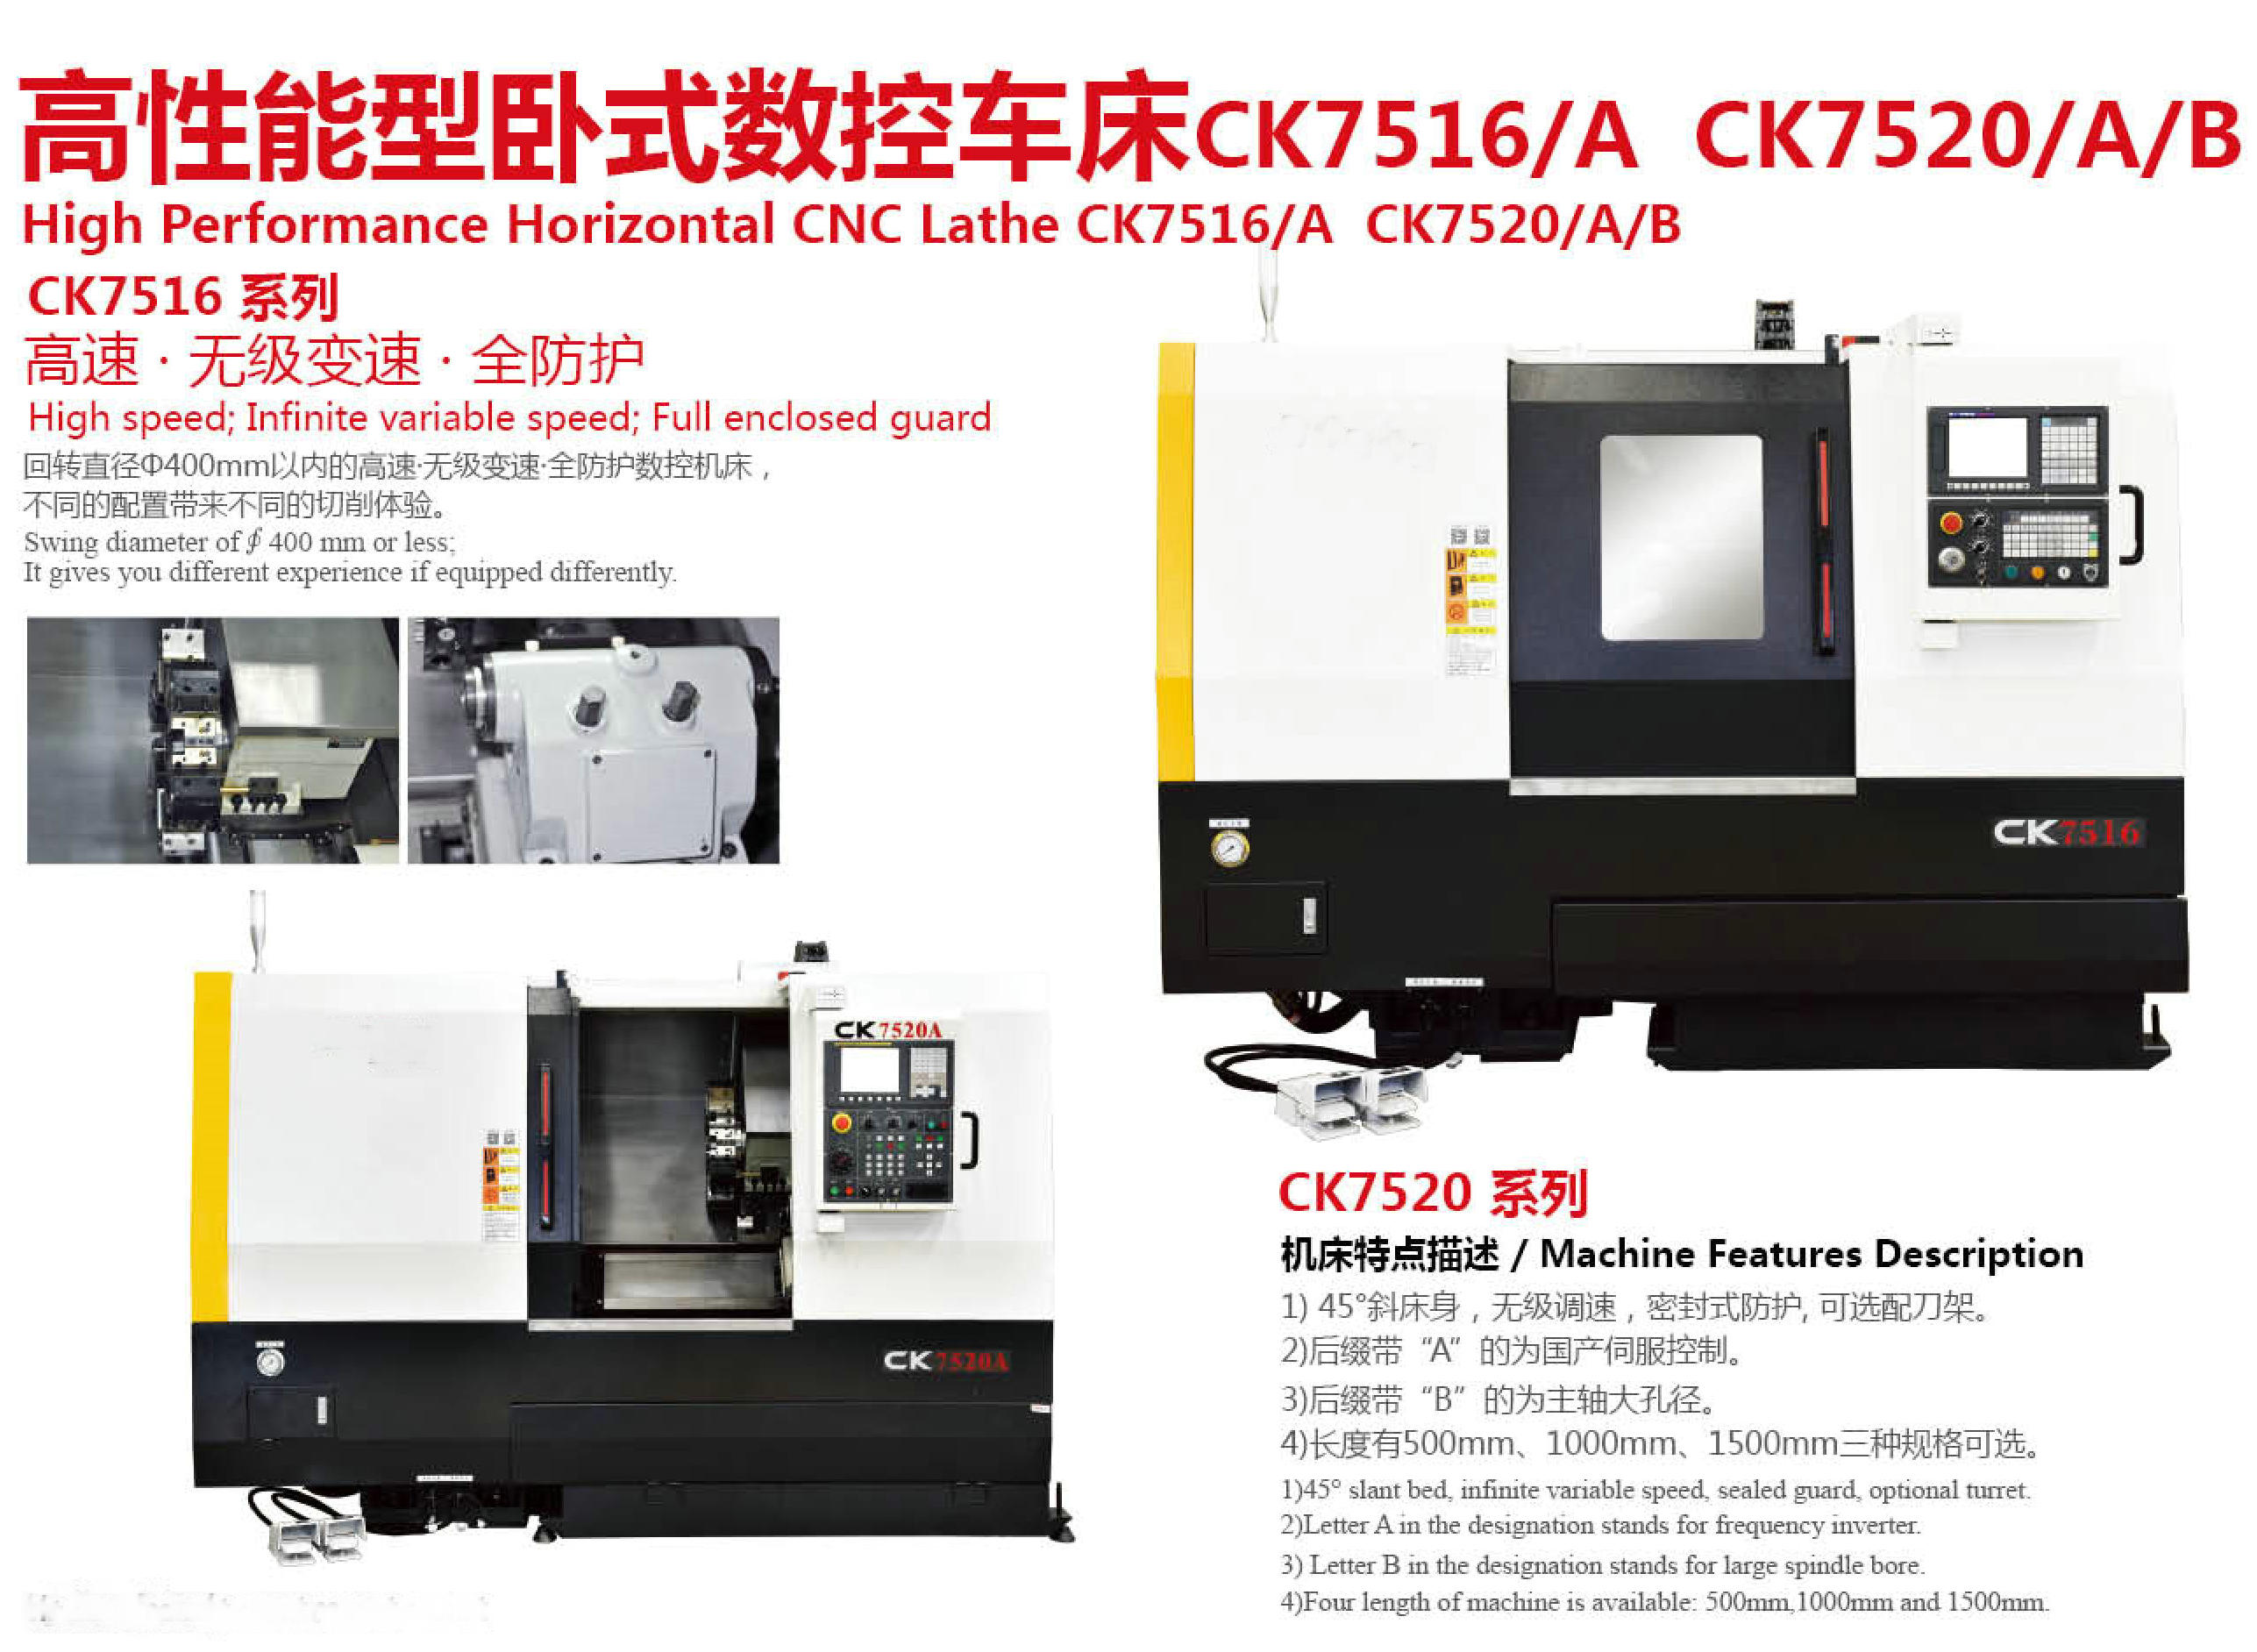 CK7156